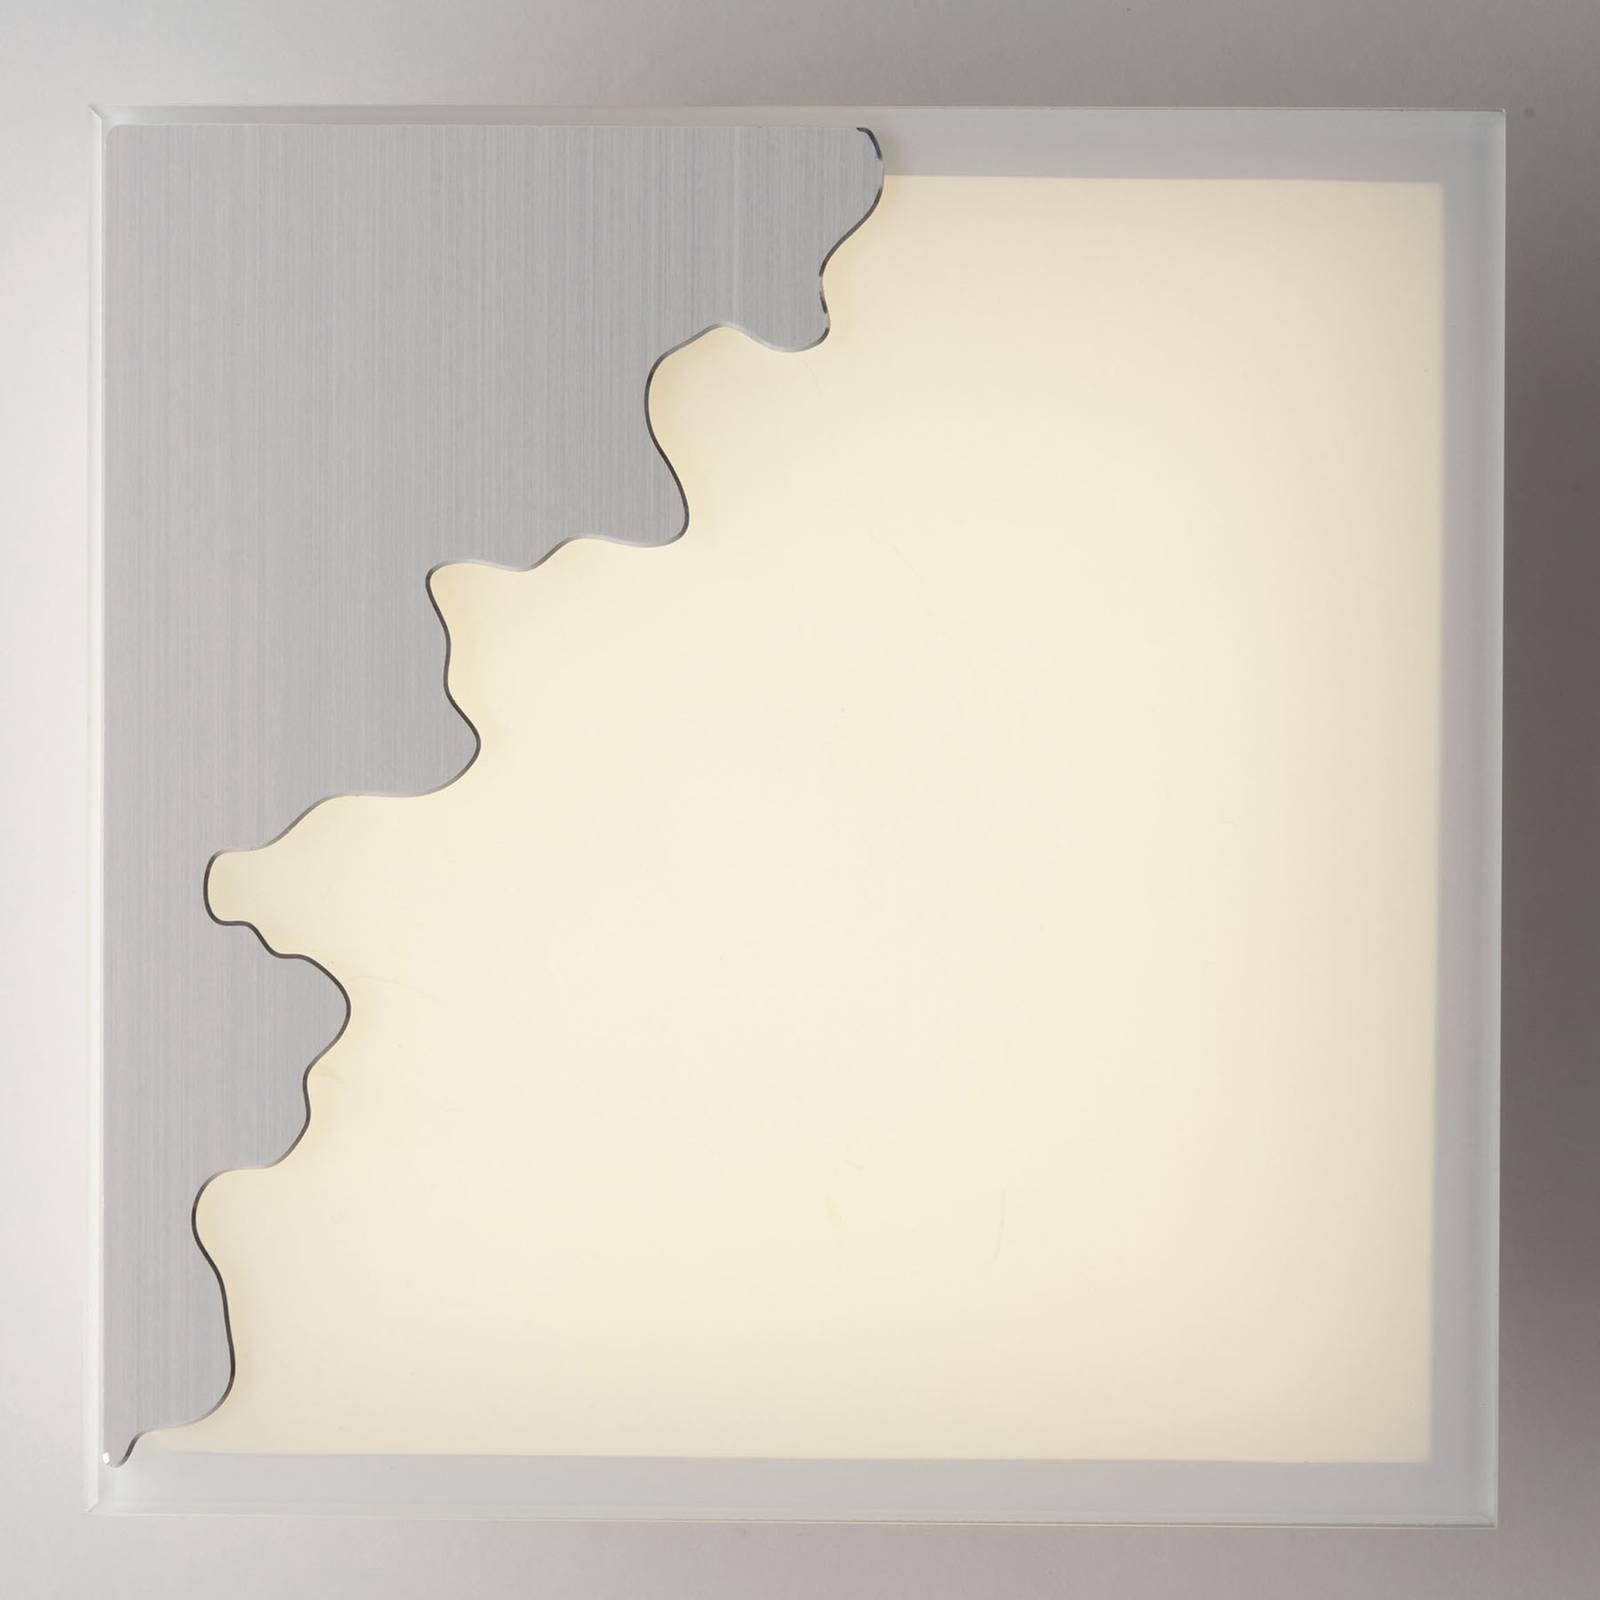 Eco-Light Applique Chic, angulaire, argenté/satiné, 25x25 cm